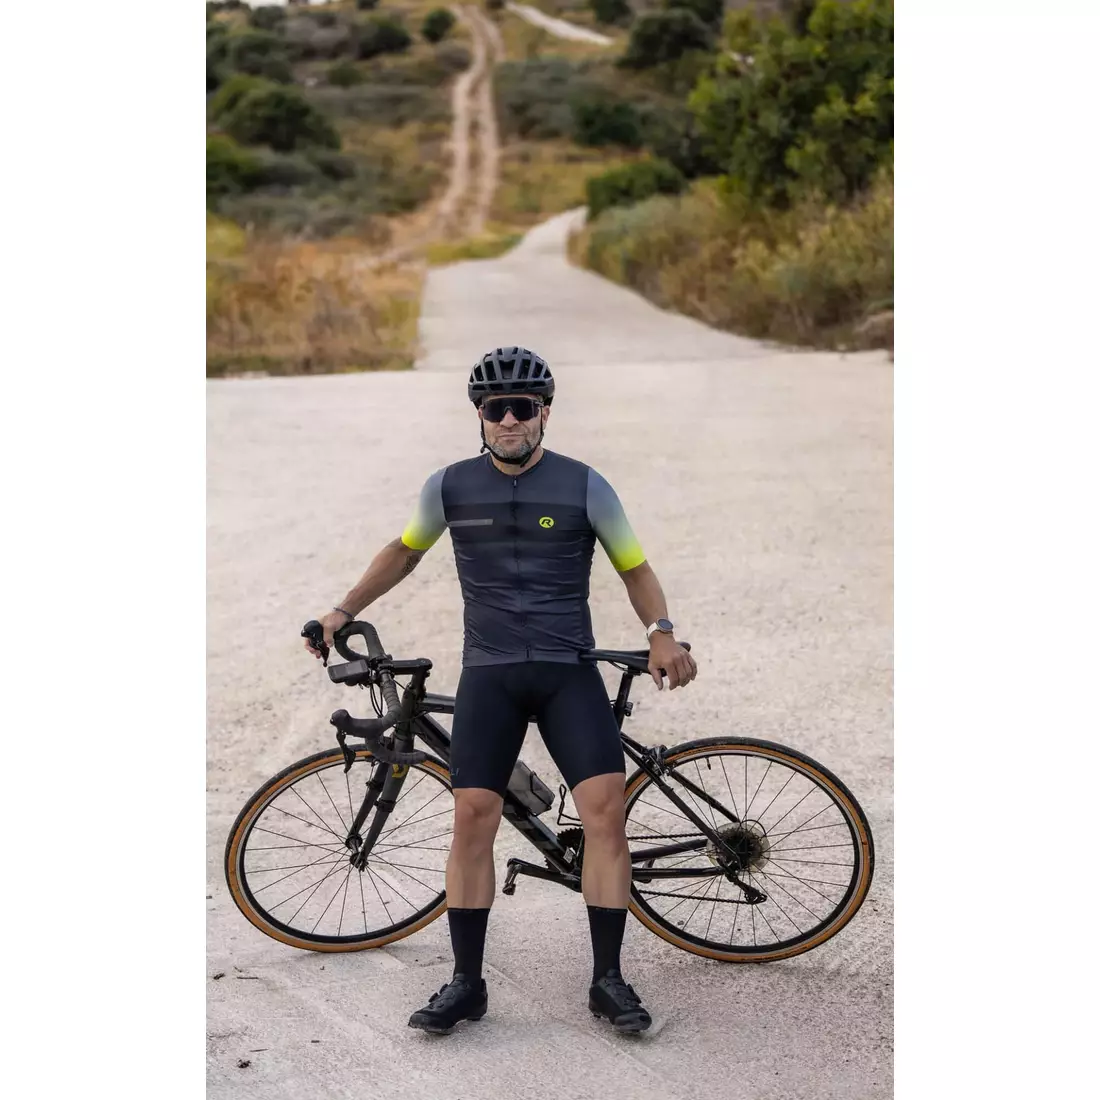 Rogelli DAWN tricou de ciclism pentru bărbați, grafit-fluor